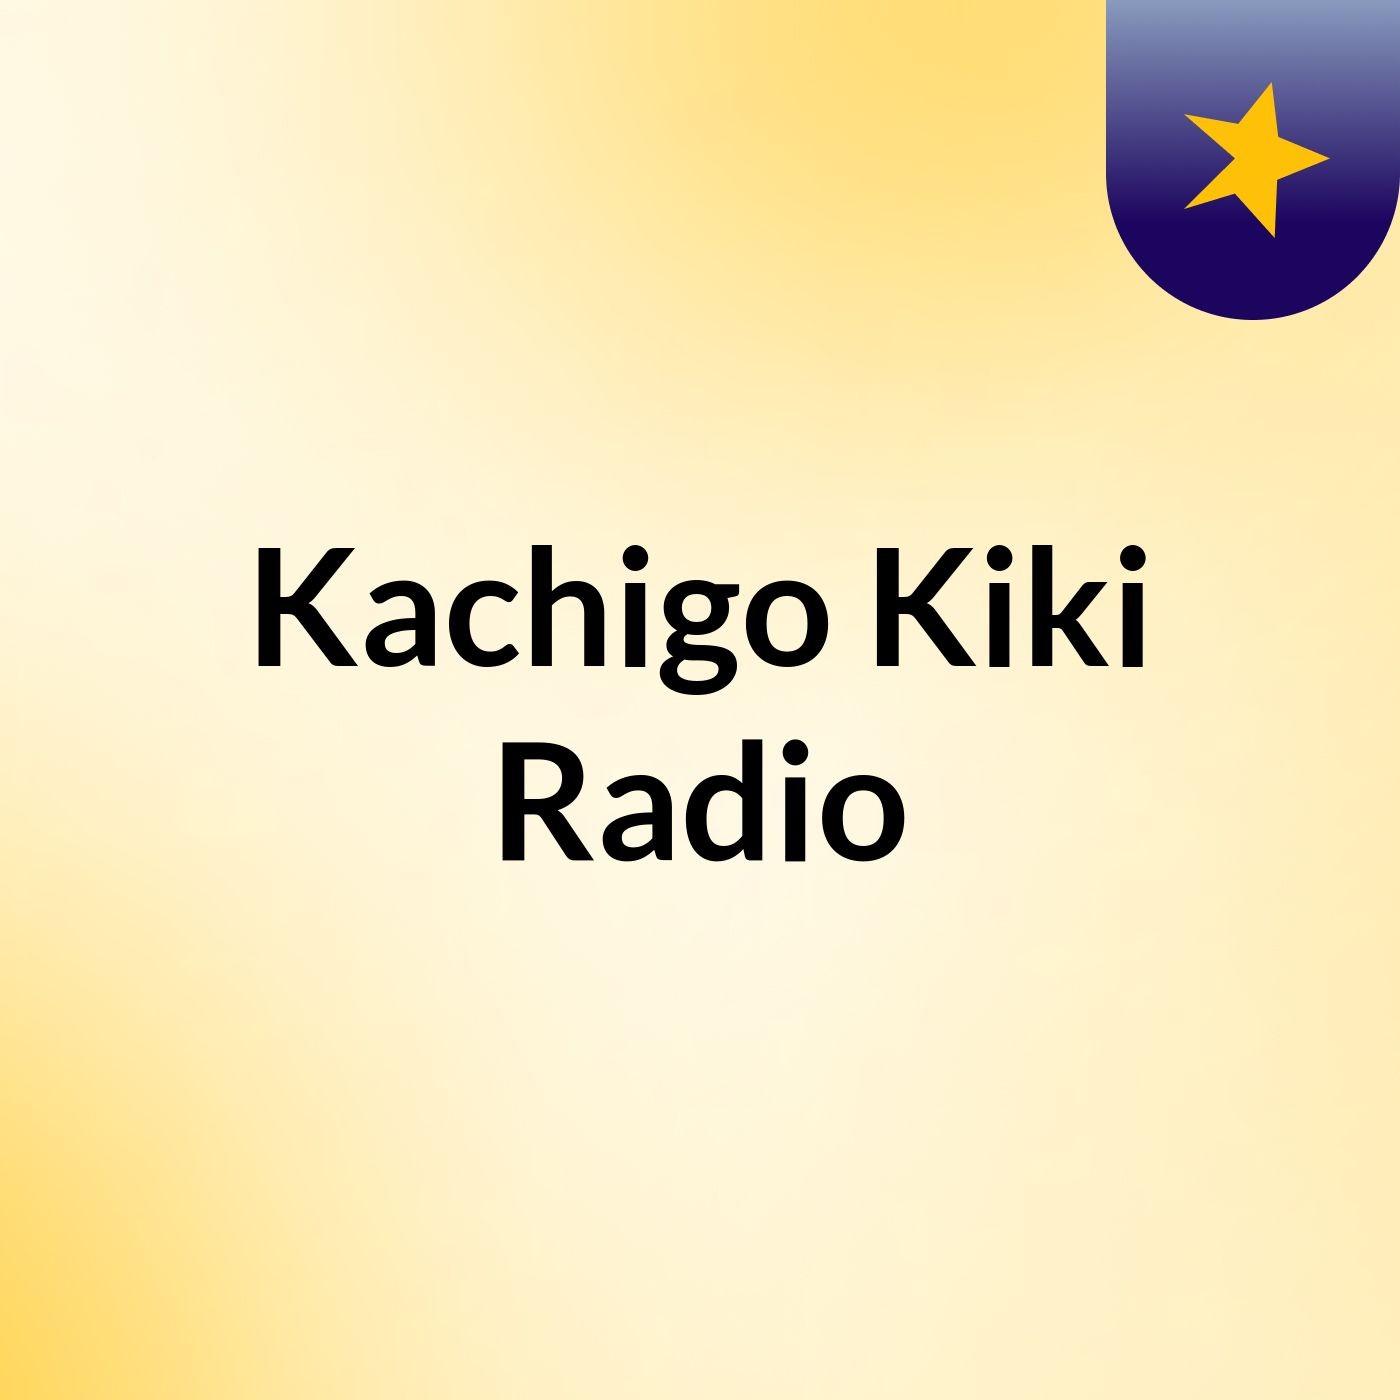 Kachigo Kiki Radio